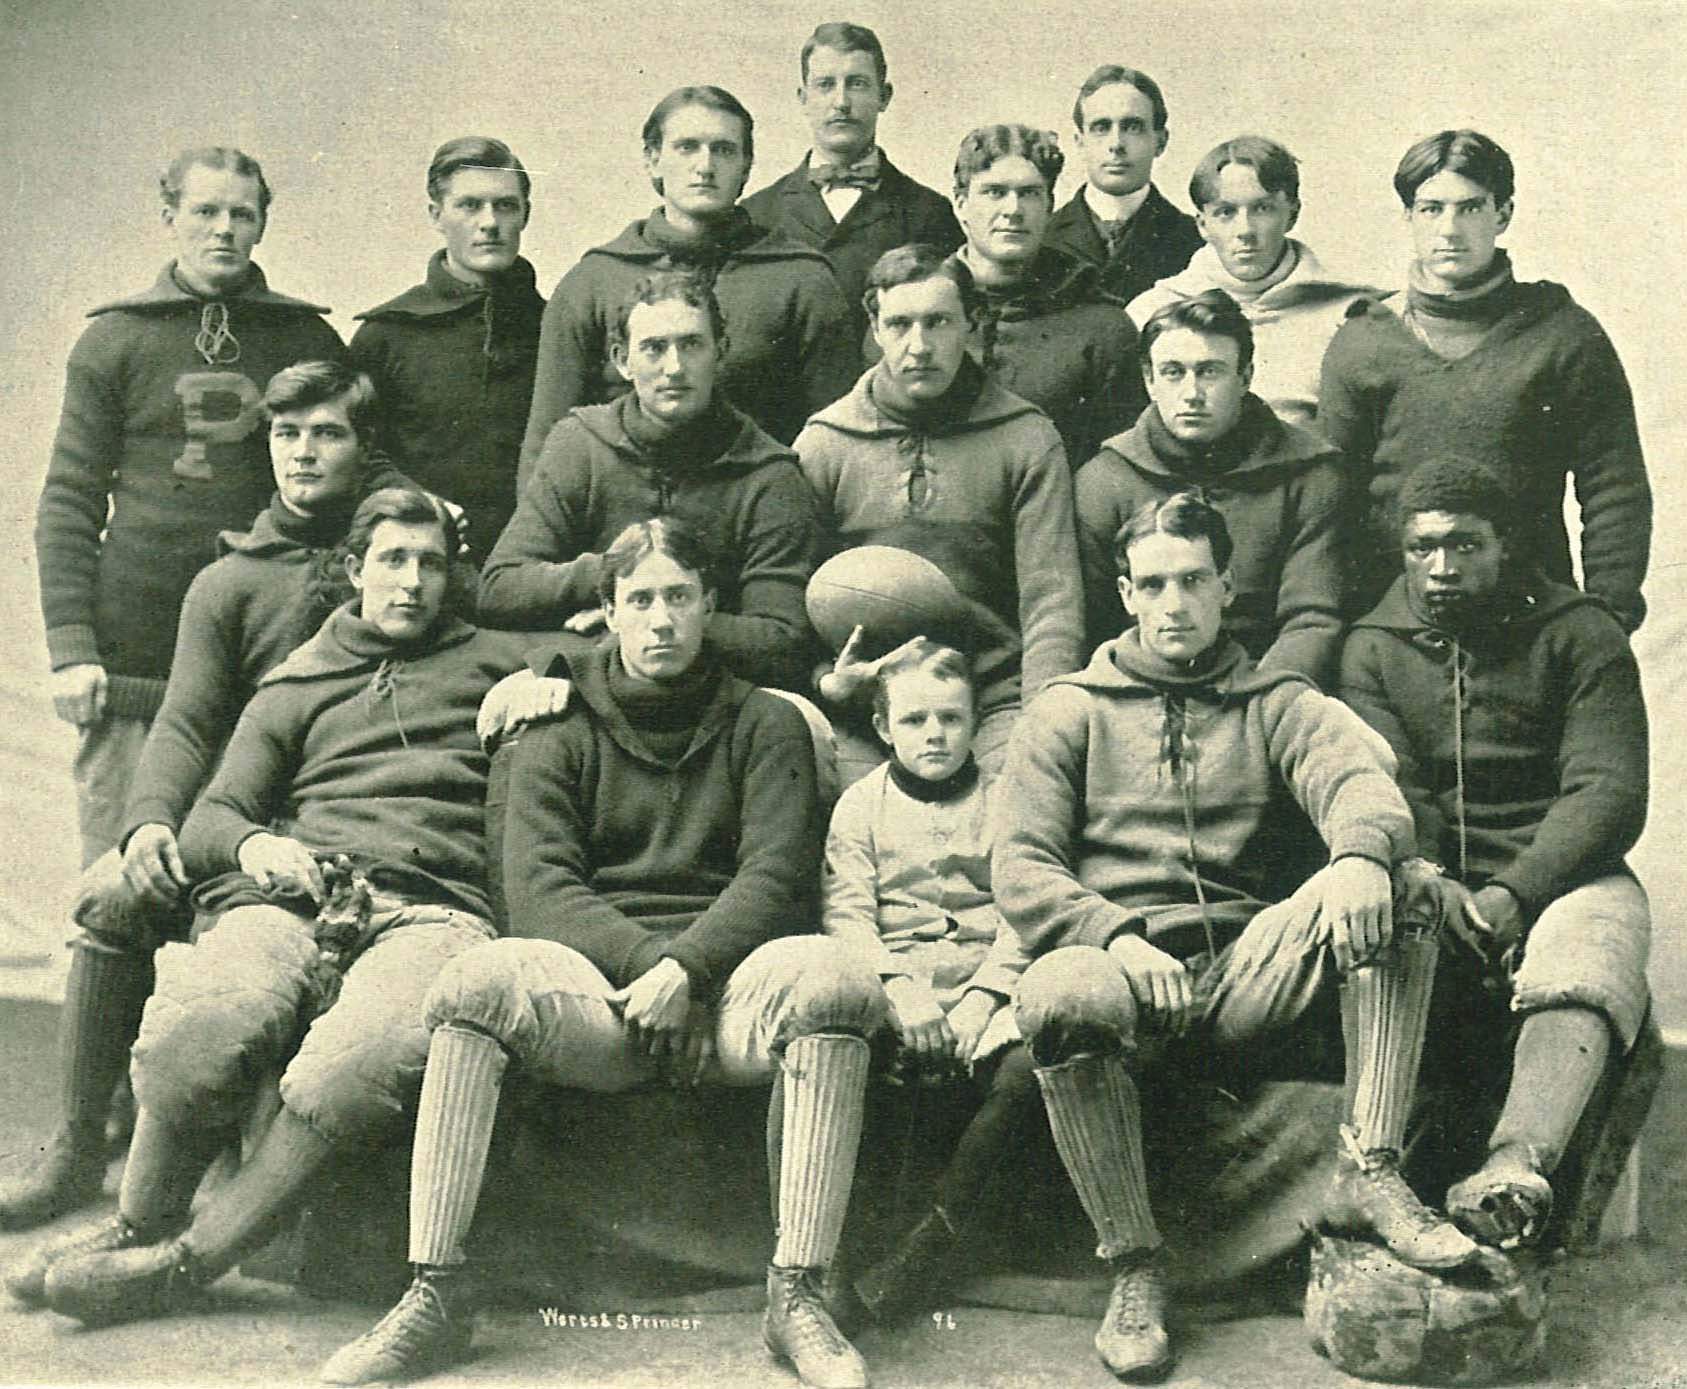 Iowa hawkeye football team 1895 or 1896